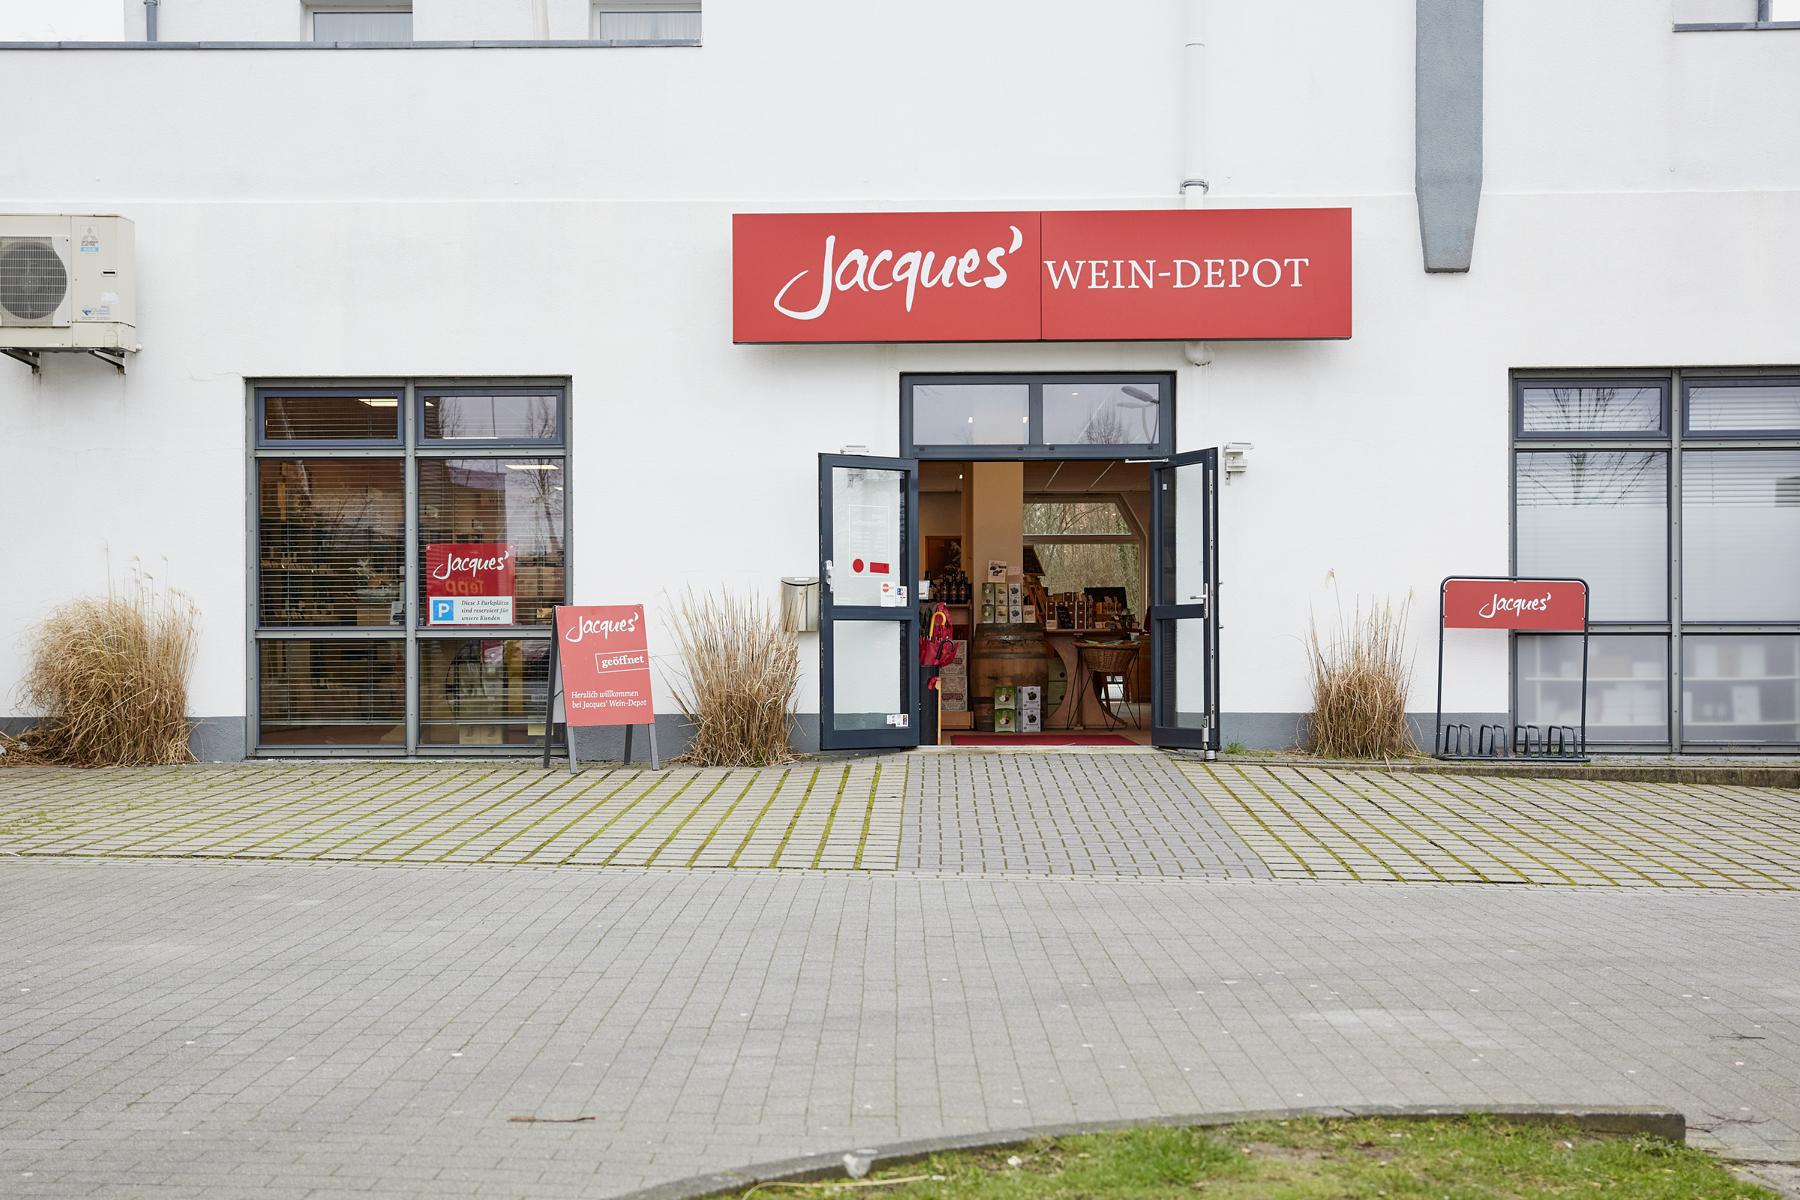 Bilder Jacques’ Wein-Depot Delmenhorst